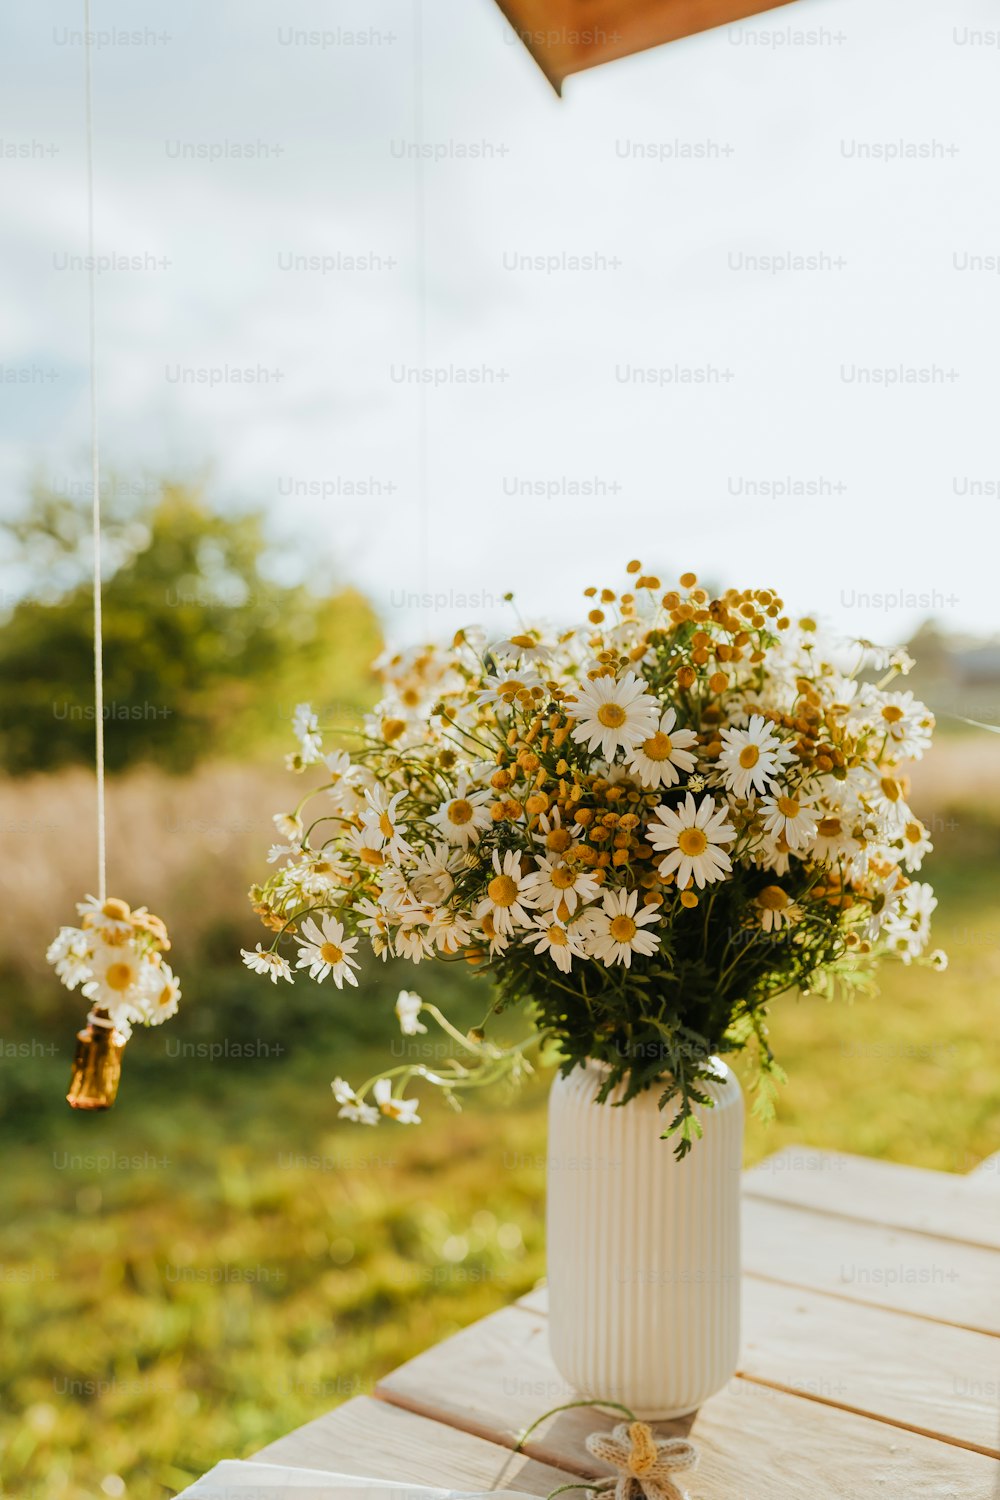 Eine weiße Vase gefüllt mit vielen Blumen auf einem Holztisch